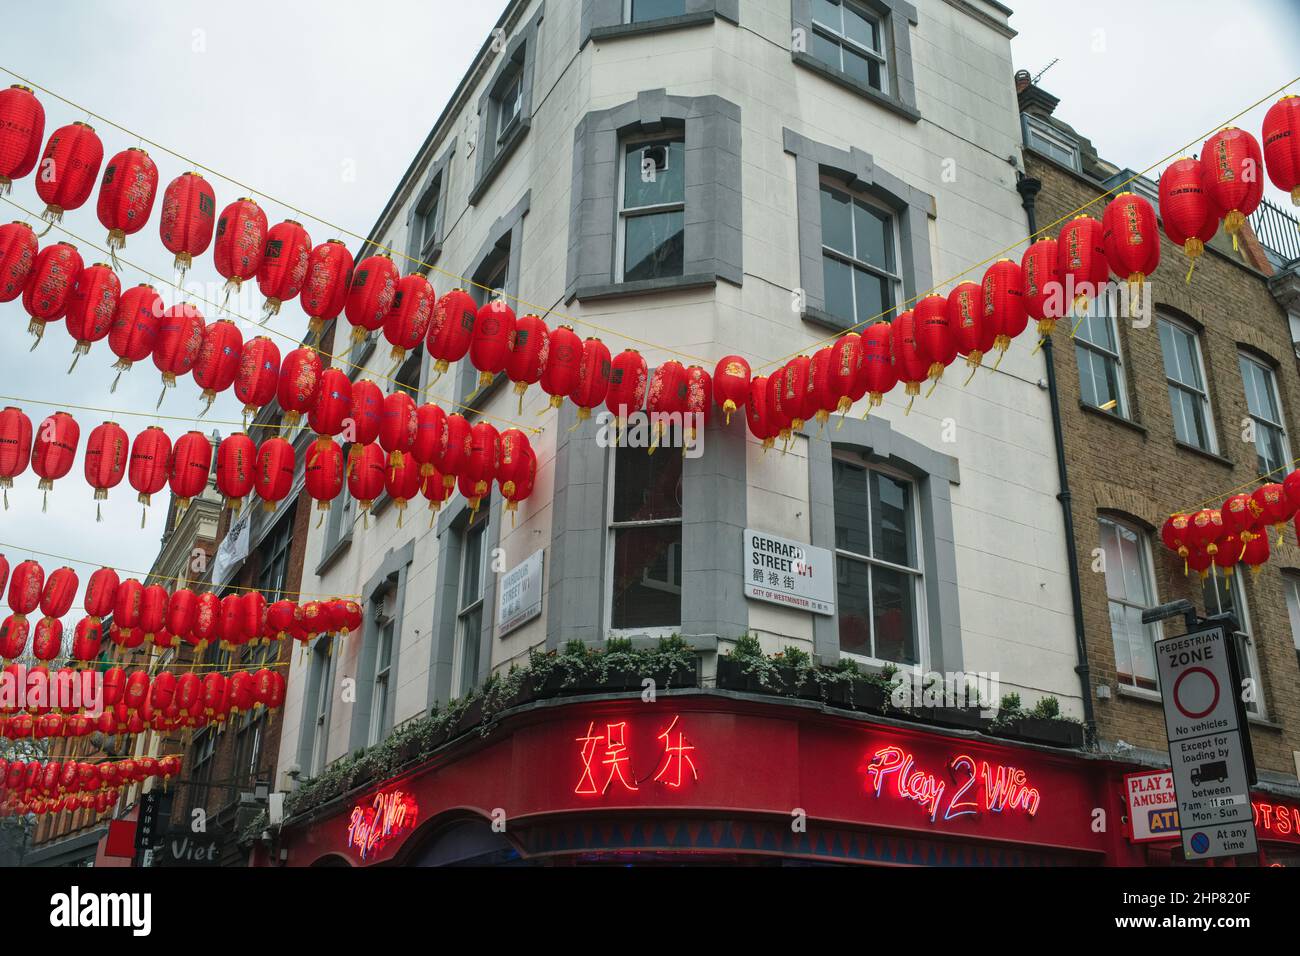 Chinesische Laternen in der Gerrard Street, Londons Chinatown, feiern das chinesische Neujahr Stockfoto